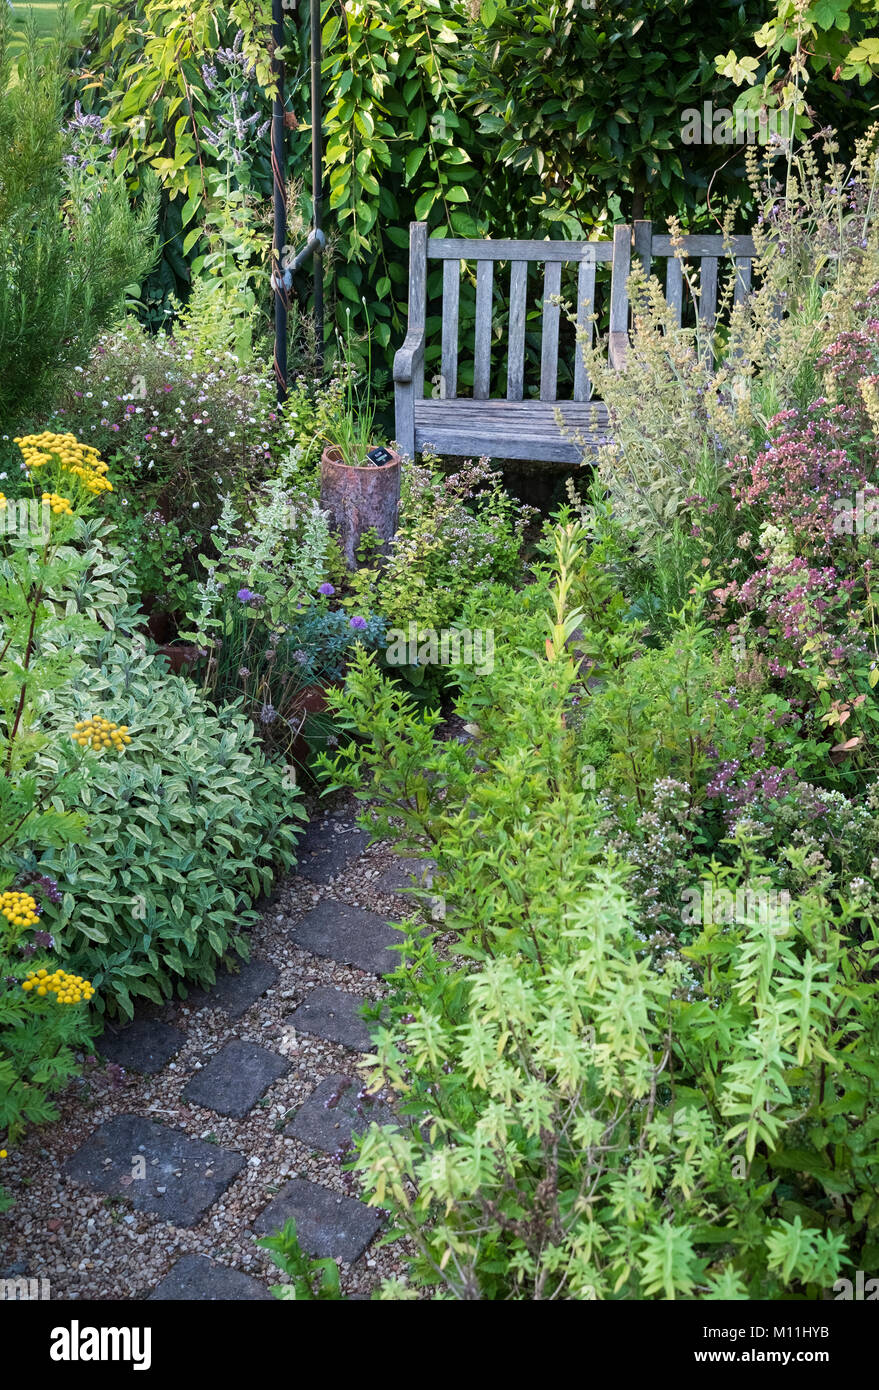 Piccolo giardino di erbe aromatiche con posti a sedere in legno area, estate, Agosto, England, Regno Unito Foto Stock